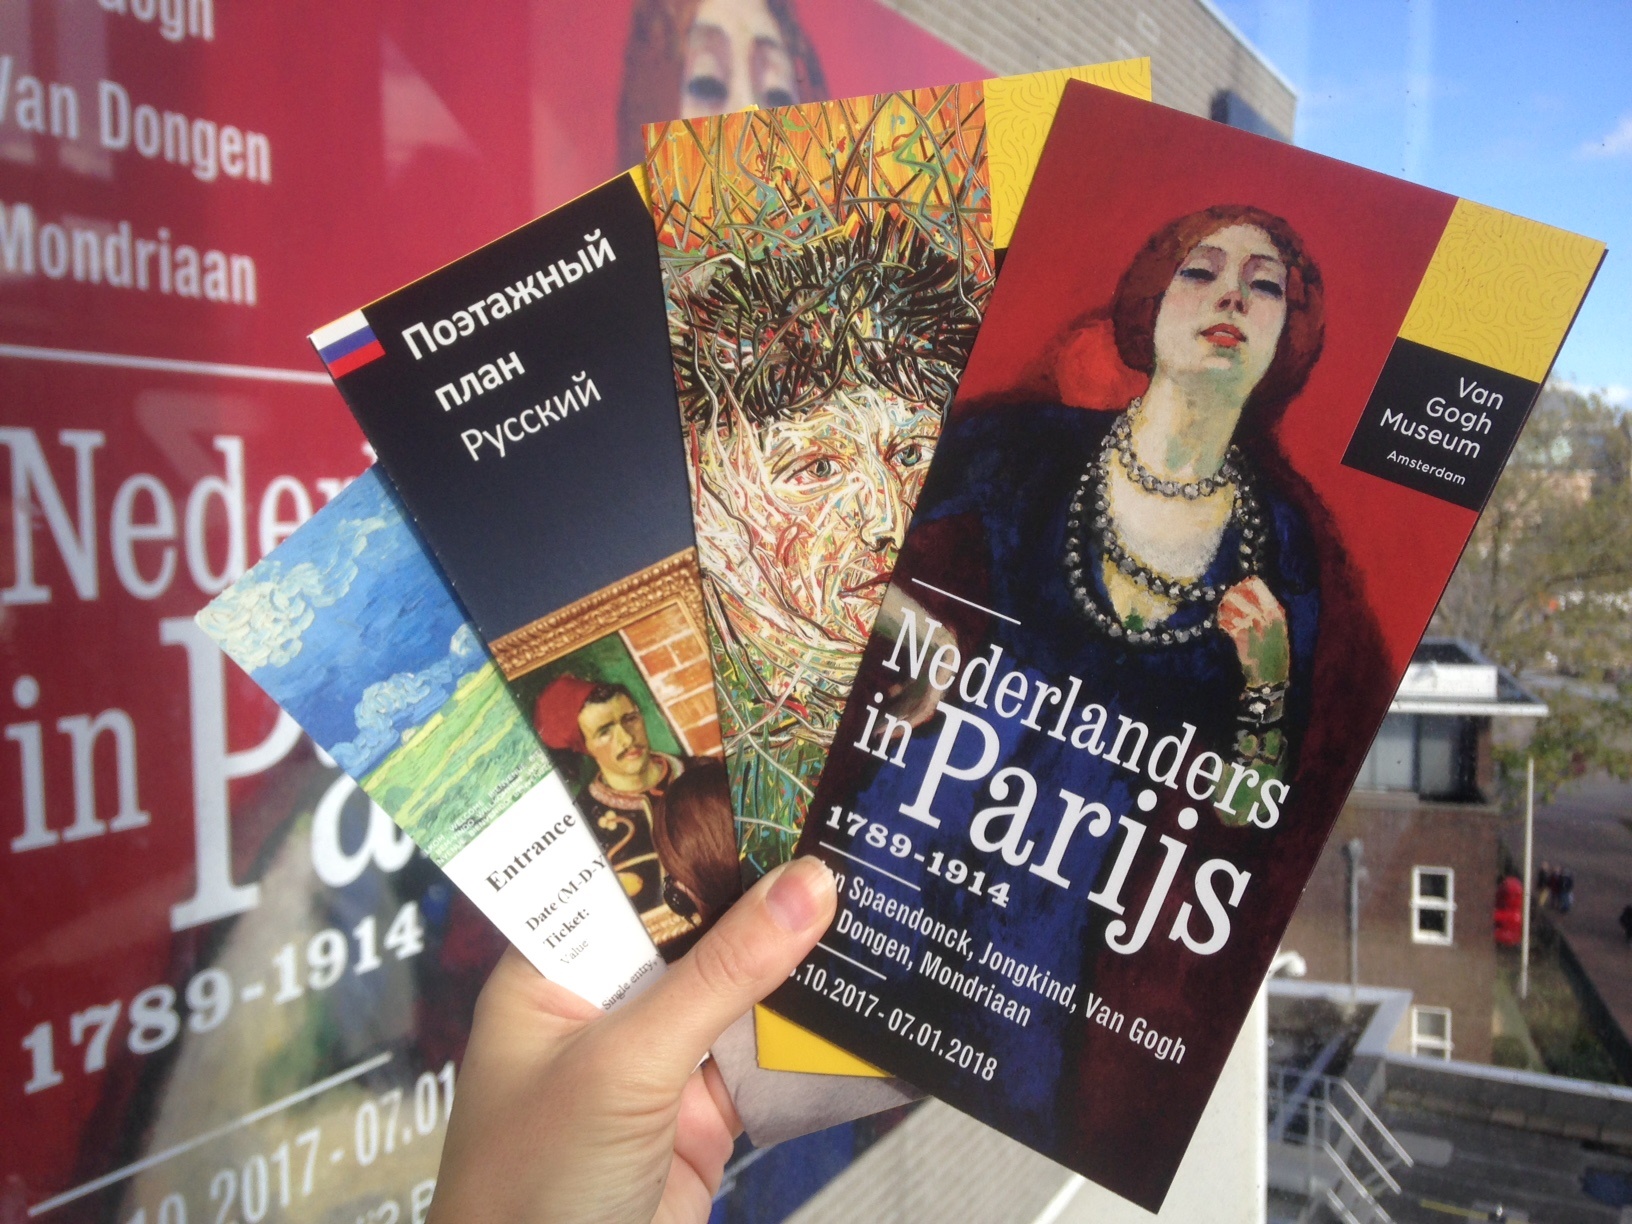 Якщо ви любите ходити в музеї з гідом, зверніть увагу на   російськомовні екскурсії   мистецтвознавця Олени Бекман - по   Rijksmuseum   і по   музею Ван Гога